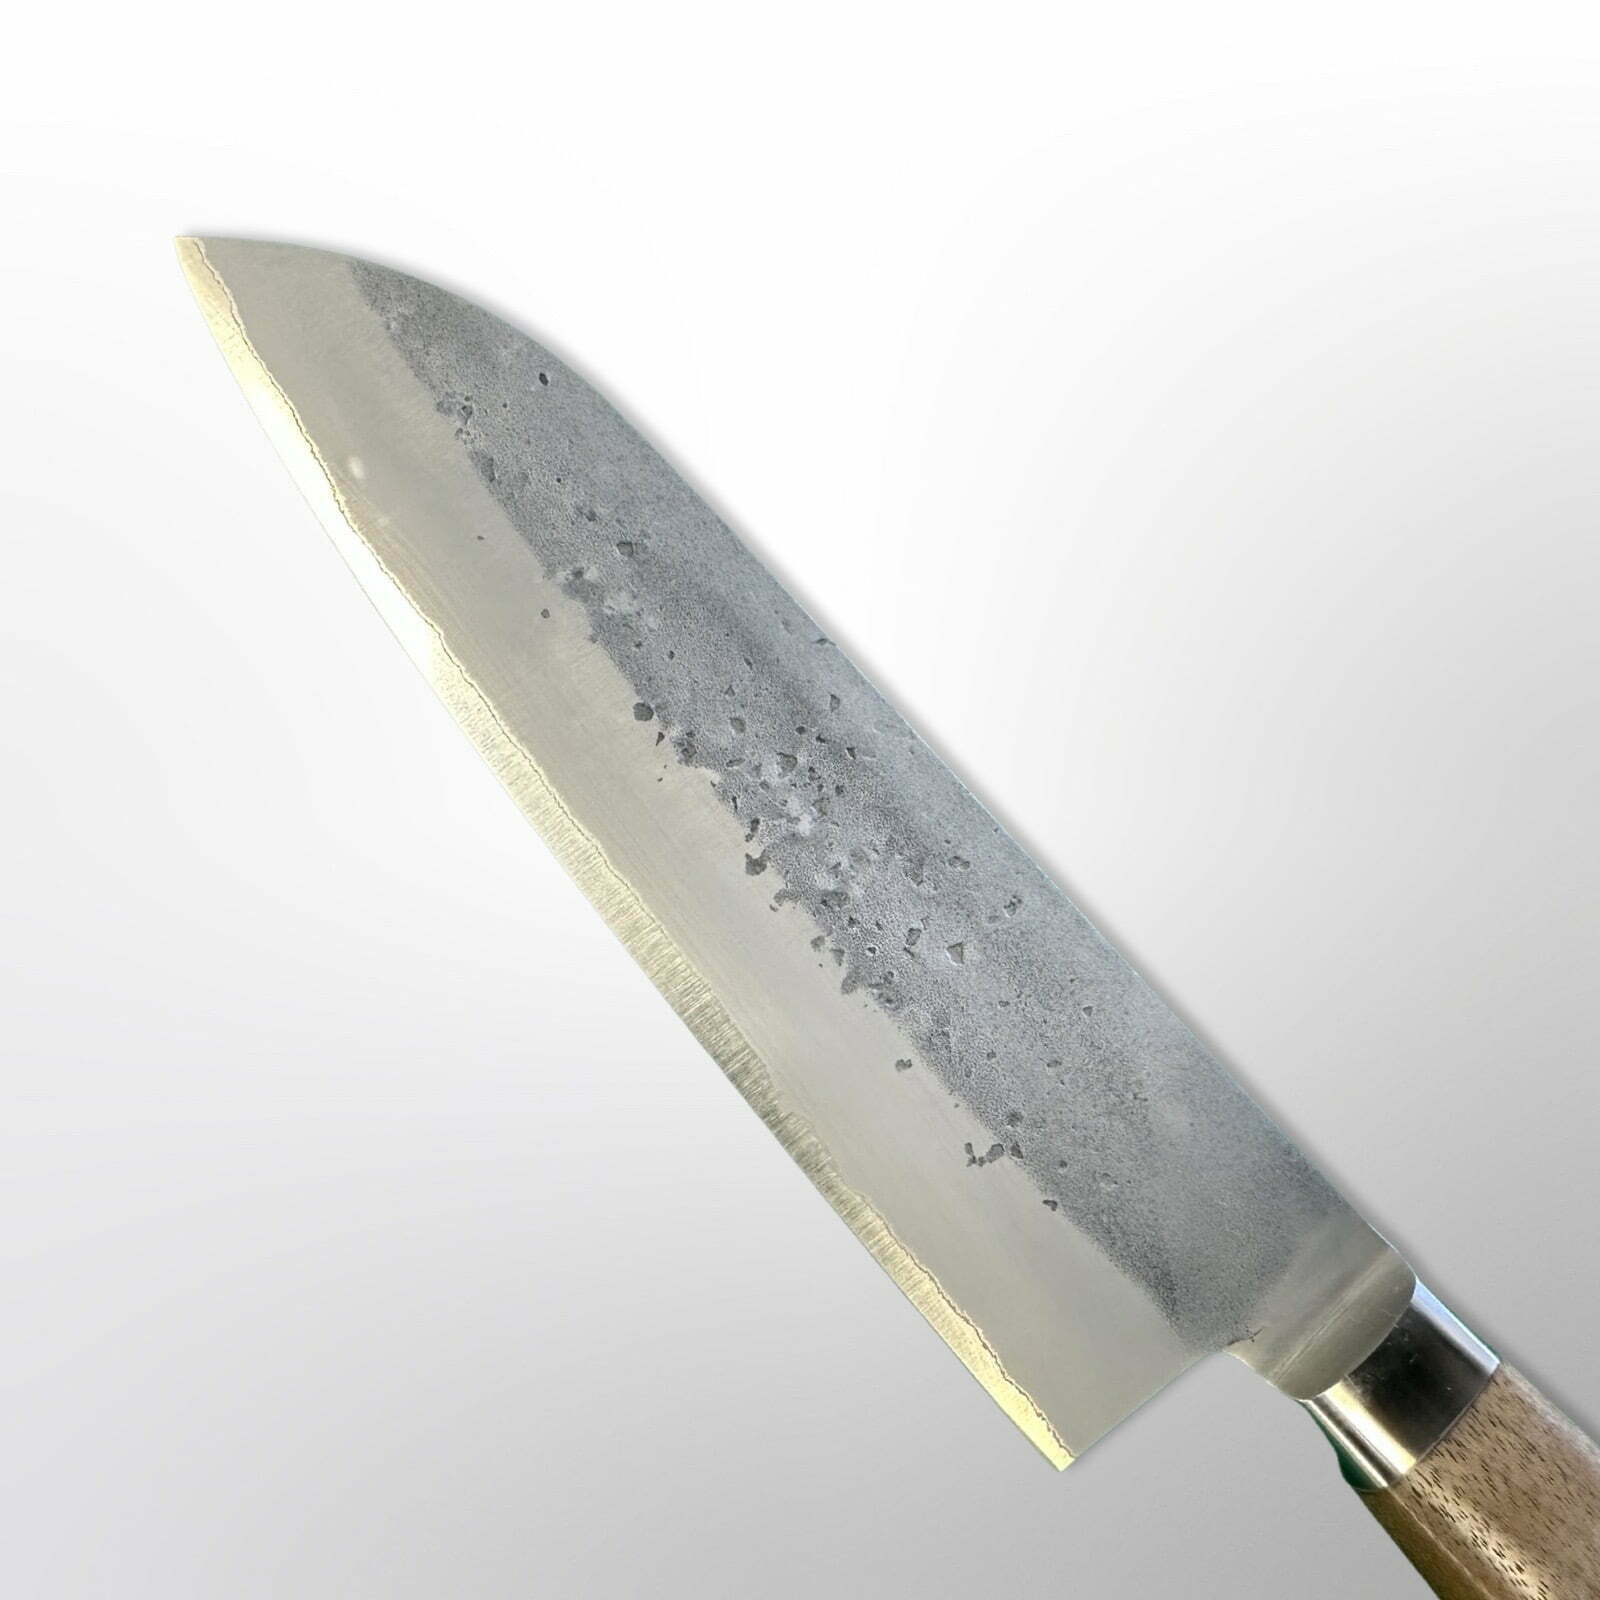  סכין רב-תכליתית סָנטוֹקוּ 170מ״מ מחוזקת 3 שכבות: פלדת פחמן יפנית אוגמי2 עטופה פלדת אל-חלד גימור נשיג׳י טדאפוסה יפן